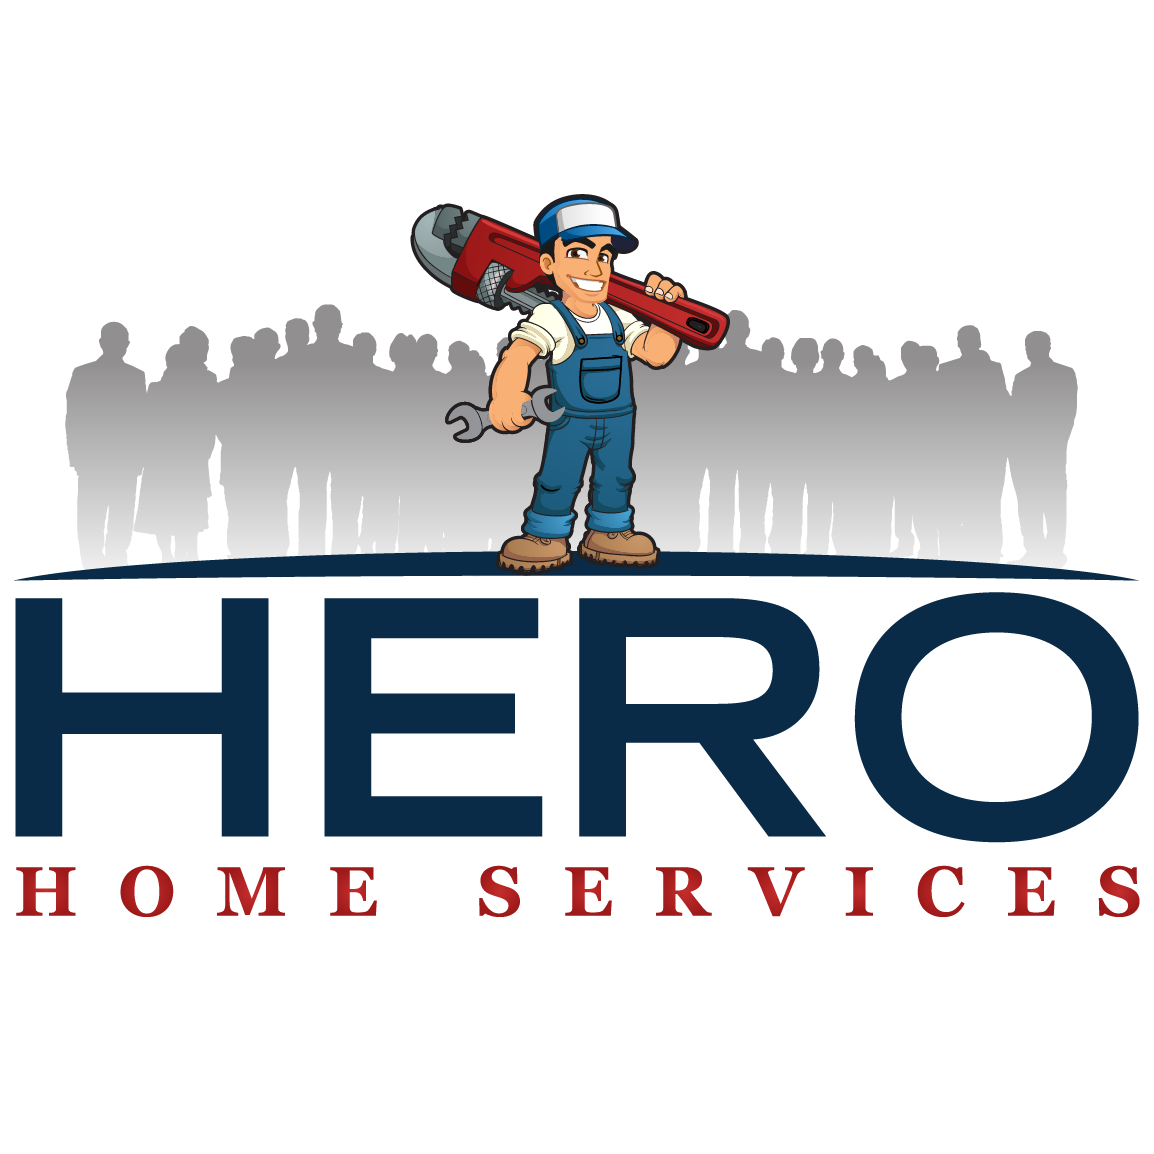 Hero Home Services Logo